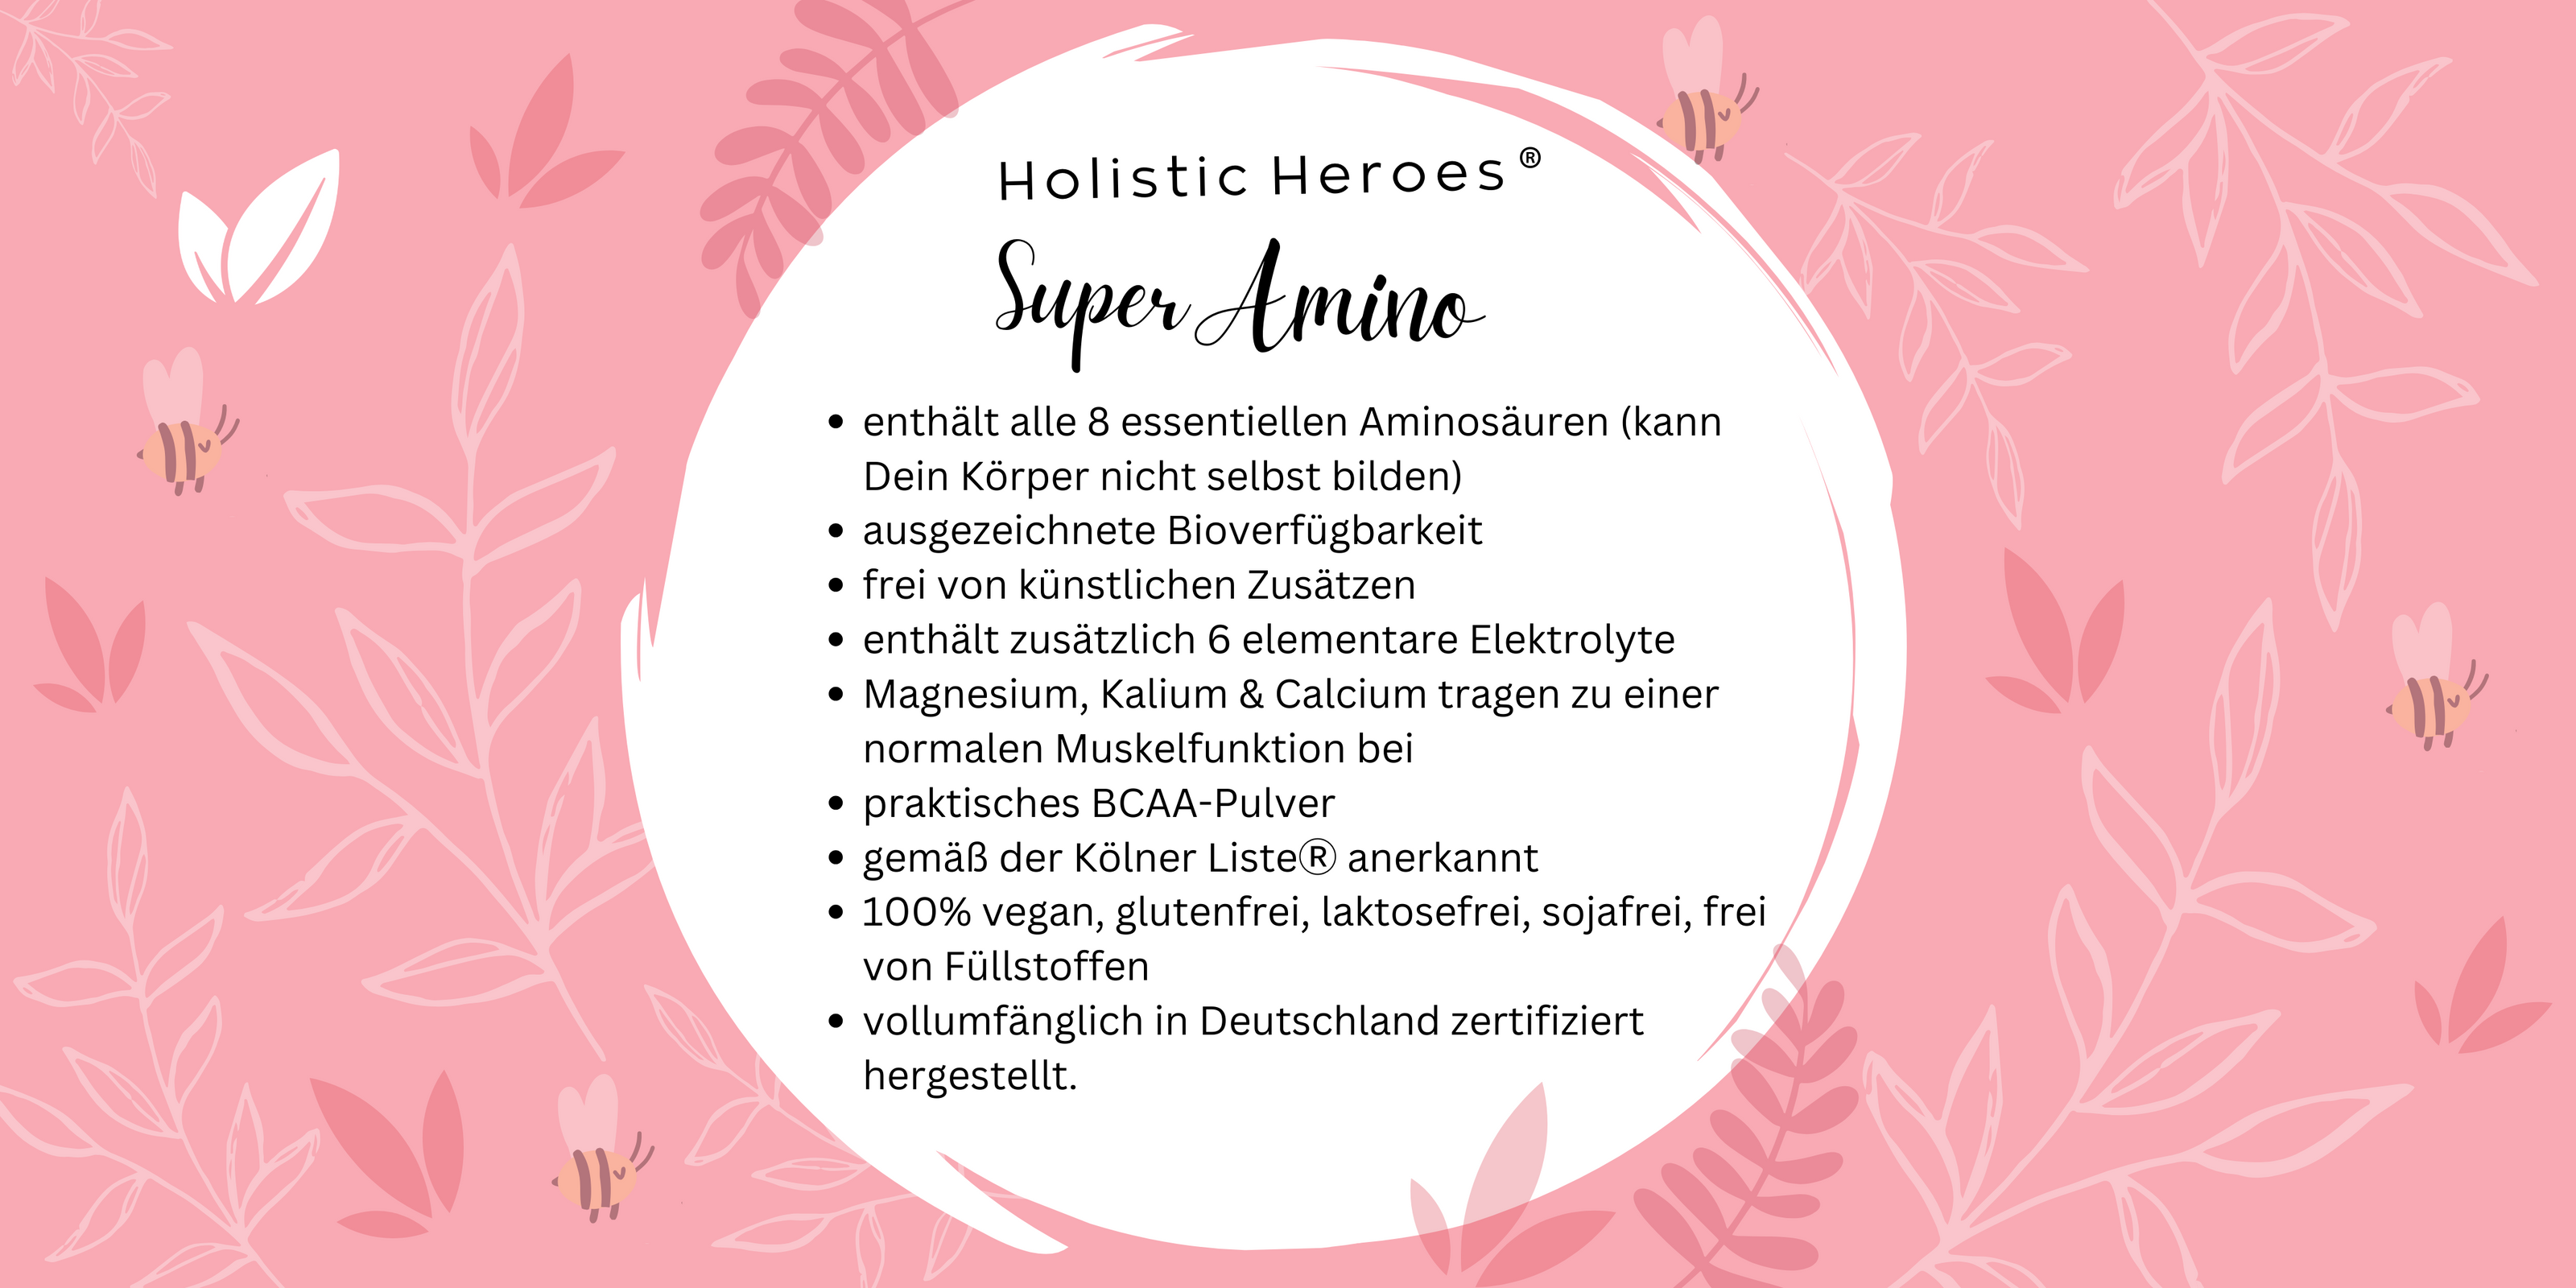 Vorteile von Holistic Heroes Super Amino - Aminosäuren für Sportler